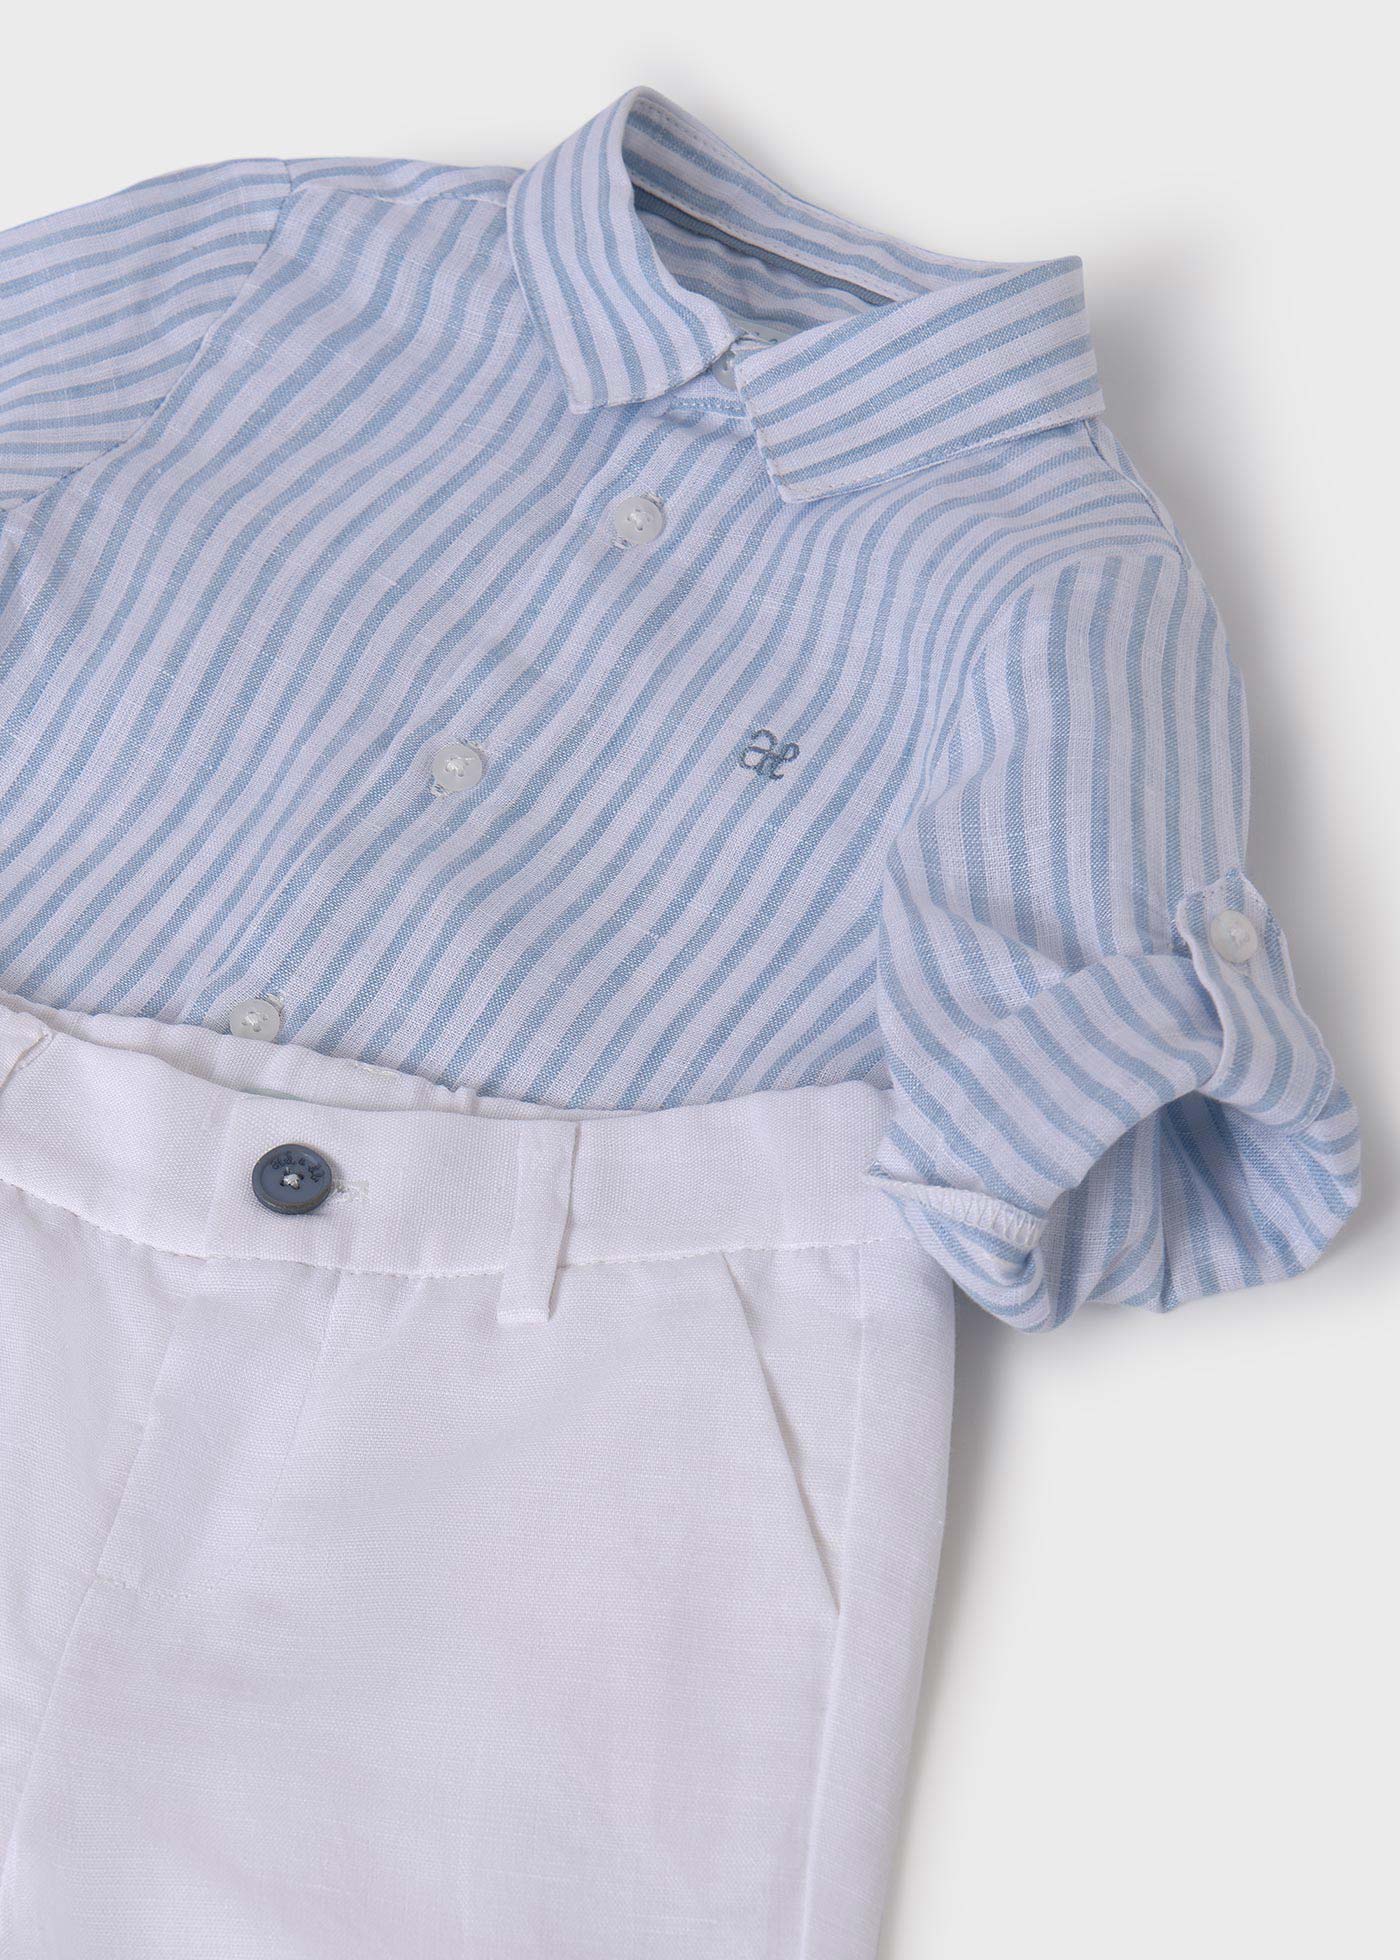 Baby Linen Shirt and Shorts Set